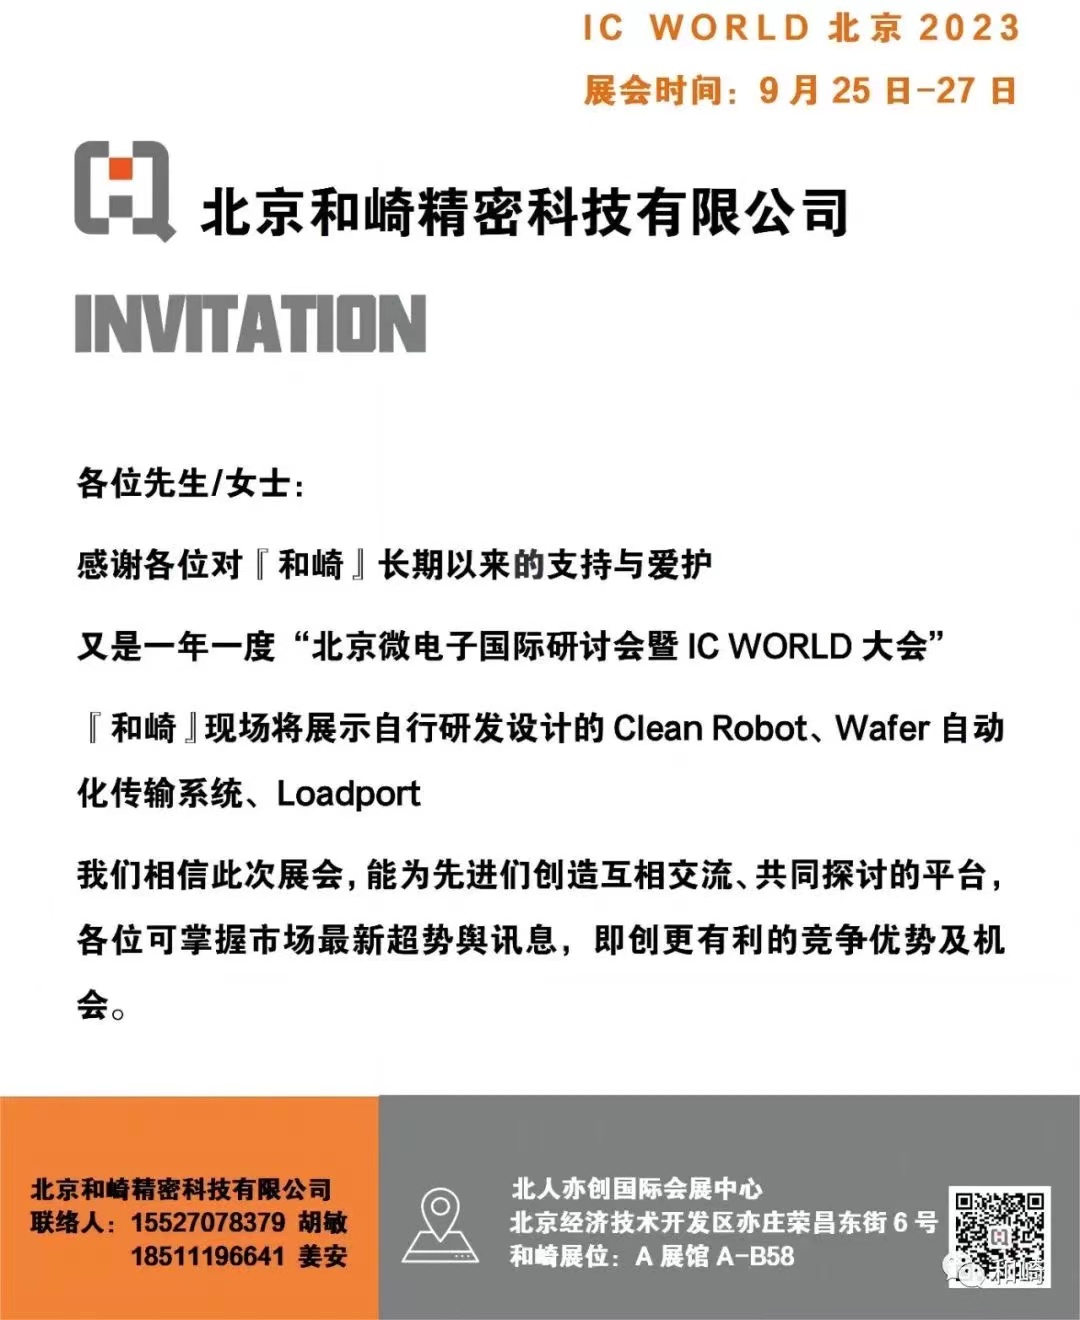 北京和崎参加“北京微电子国际研讨会暨IC WORLD 大会”